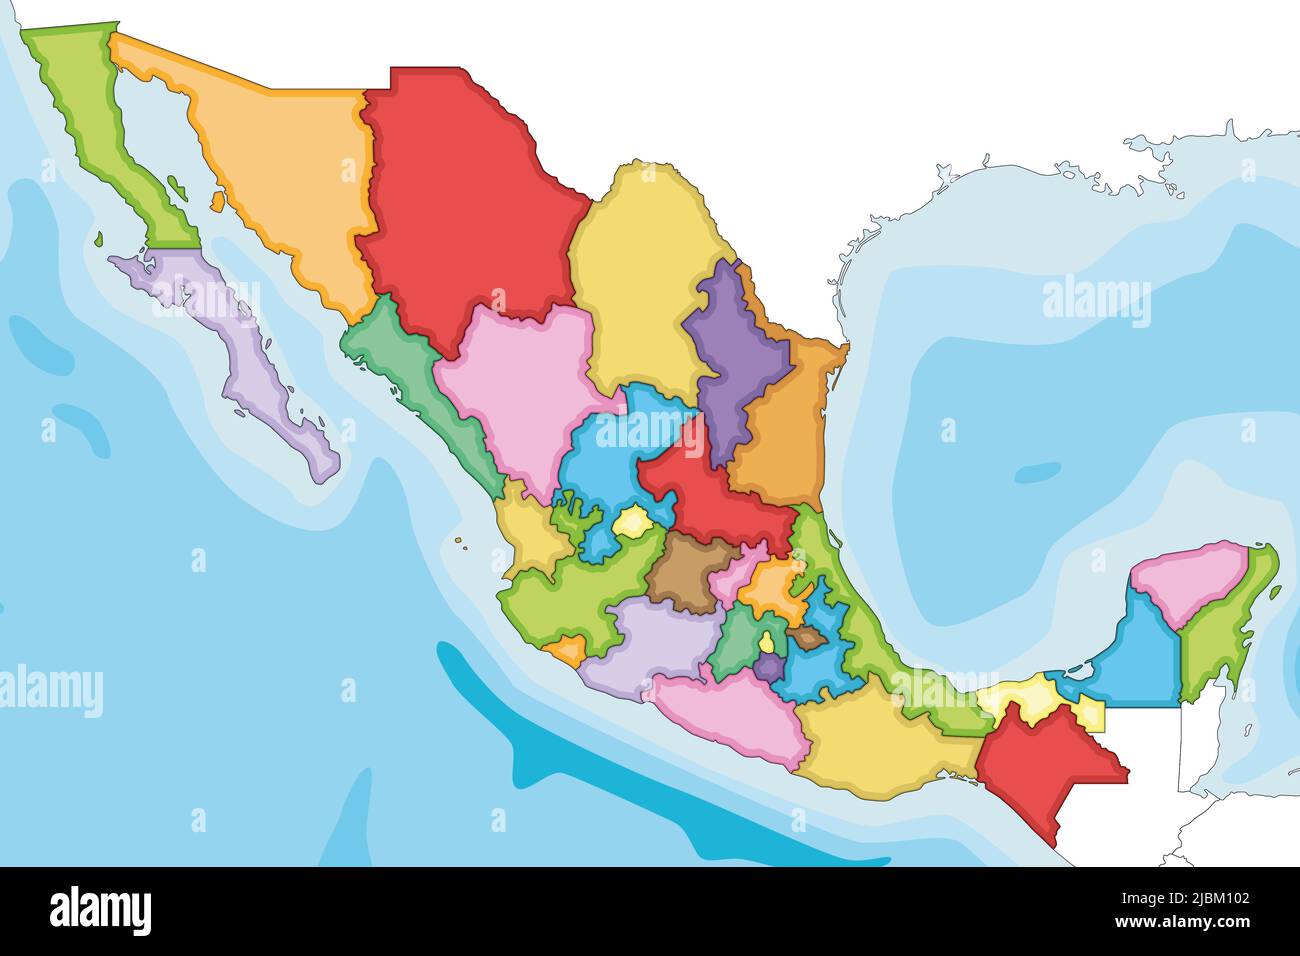 Vettore illustrato carta bianca del Messico con regioni o stati e divisioni amministrative, e paesi vicini. Modificabile e chiaramente etichettato l Illustrazione Vettoriale